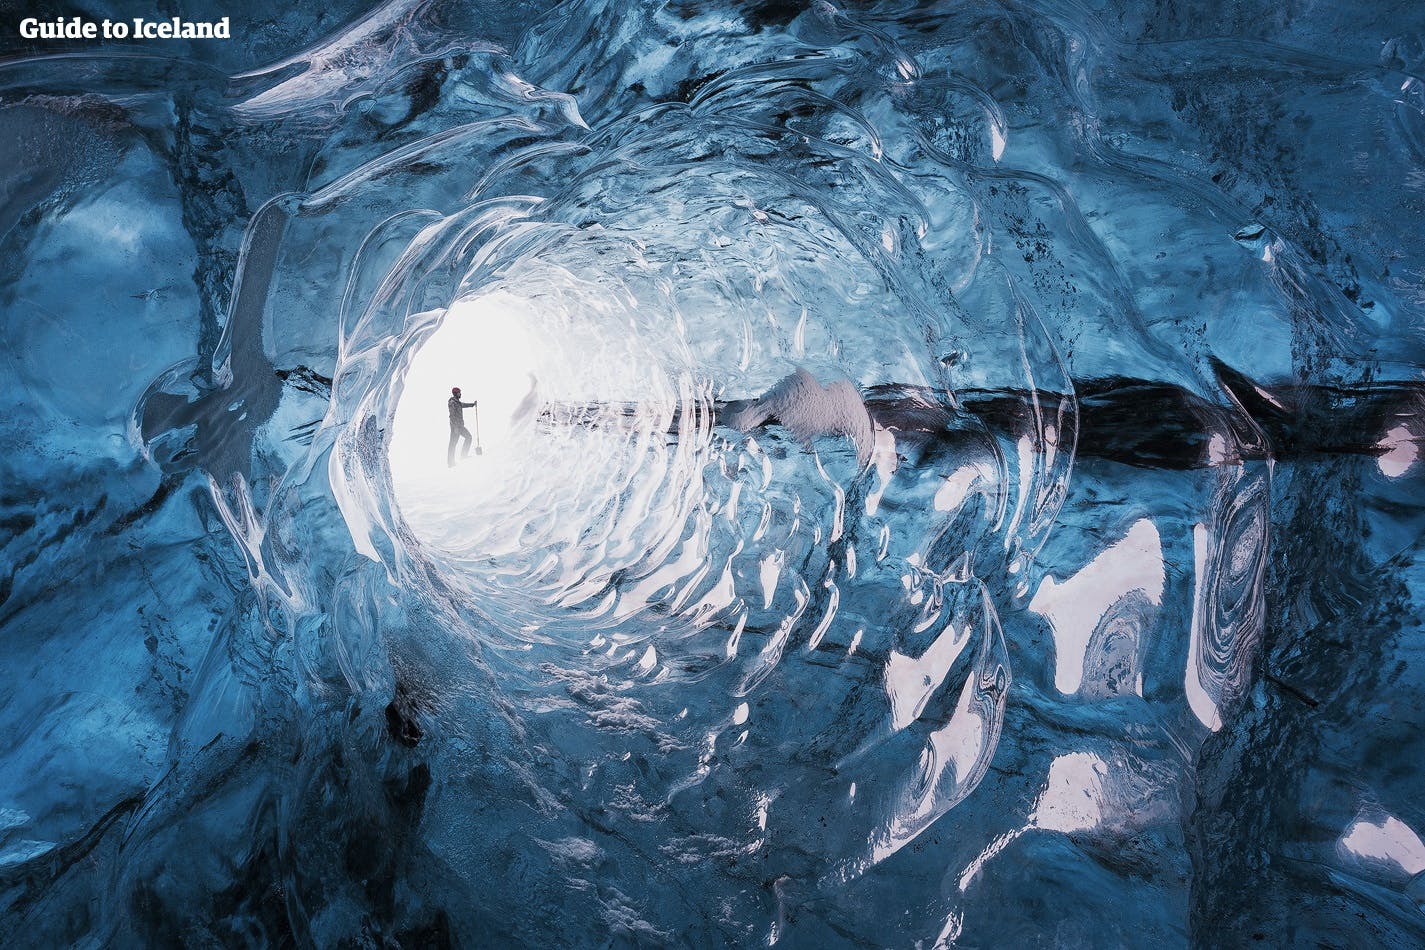 Ein natürlich geformter Eistunnel in einem von Islands gigantischen Gletschern.